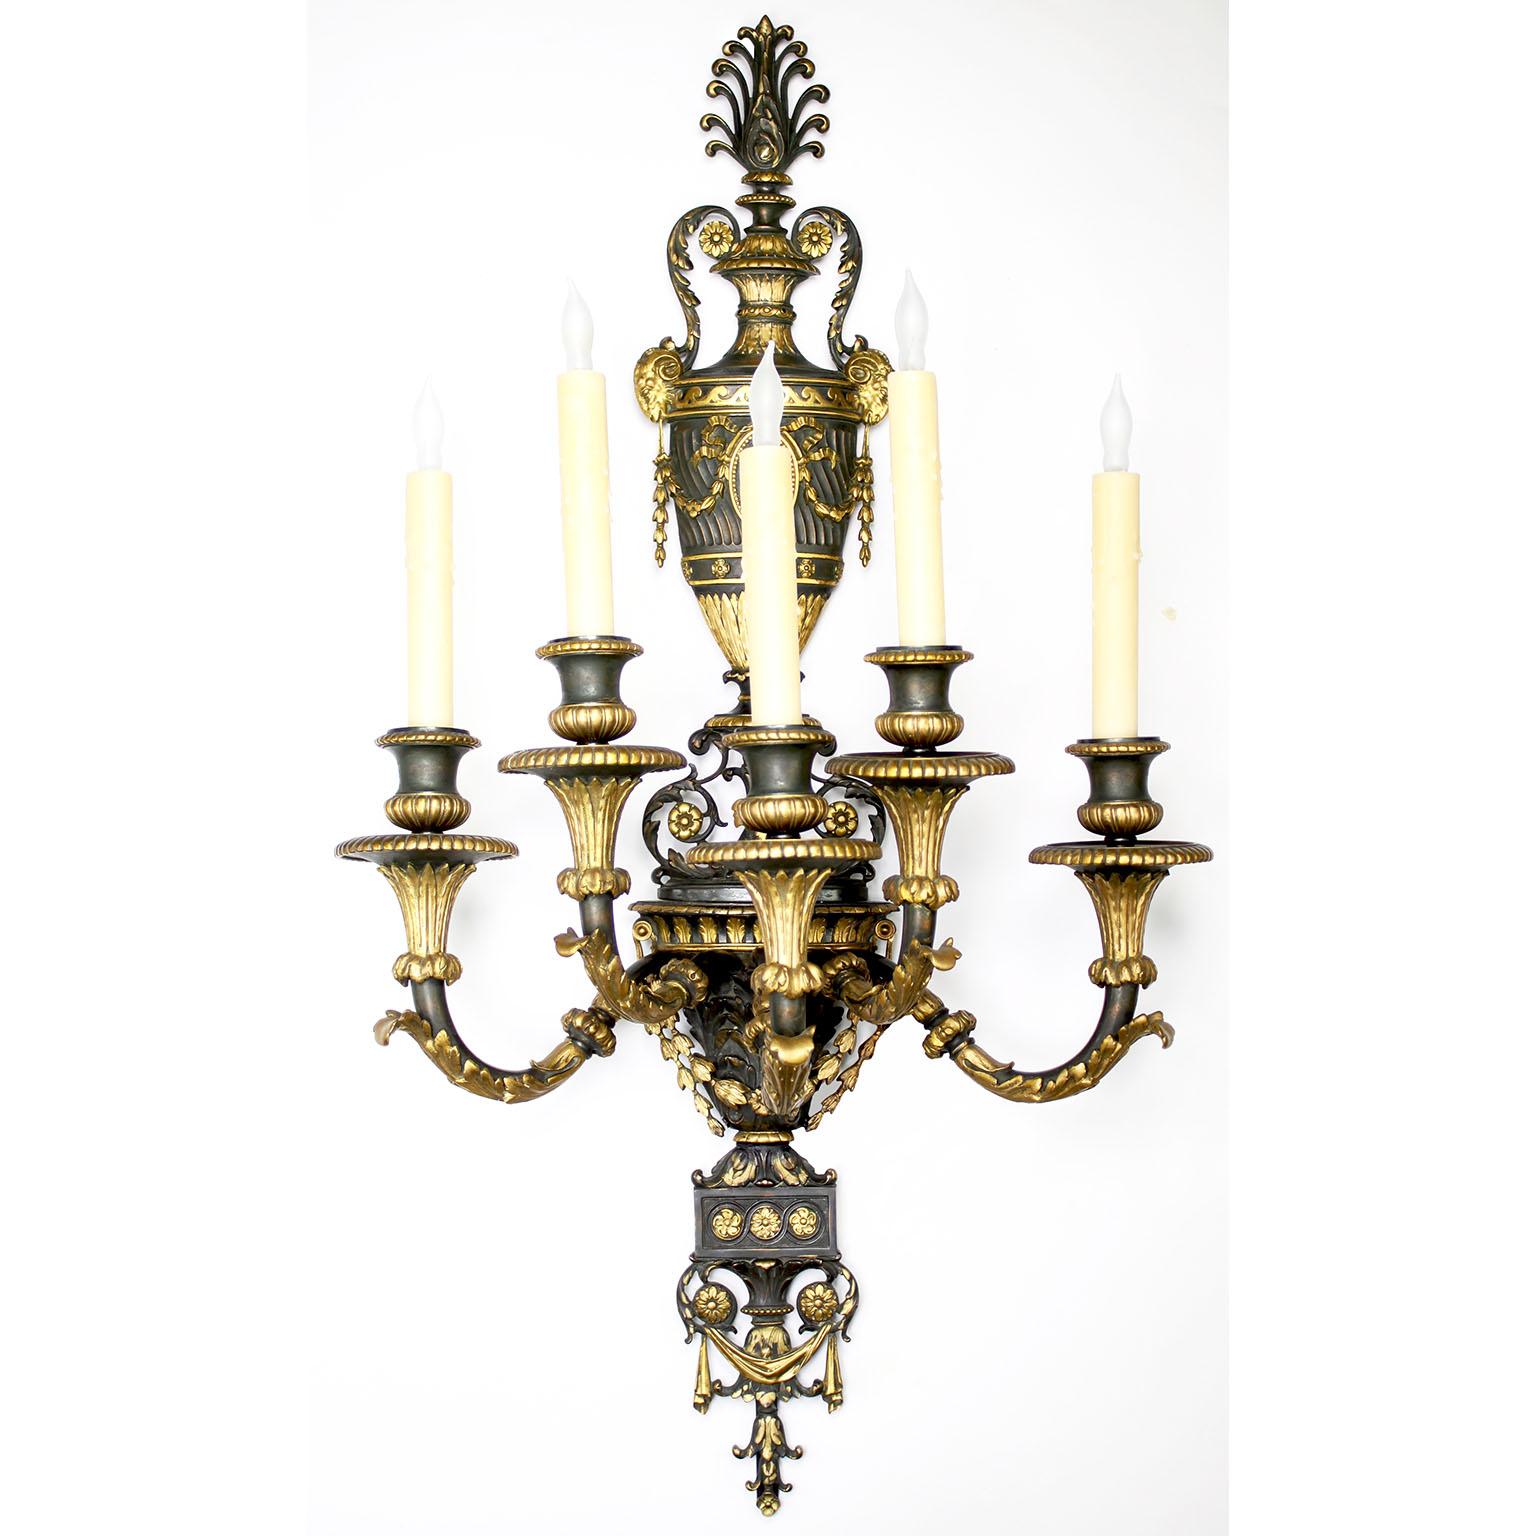 Très belle paire d'appliques à cinq lumières de style Empire néoclassique français du XIXe siècle, en bronze patiné et doré à la parcelle. Les cadres allongés en deux tons patinés foncés, chacun surmonté d'une plaque arrière en forme d'urne